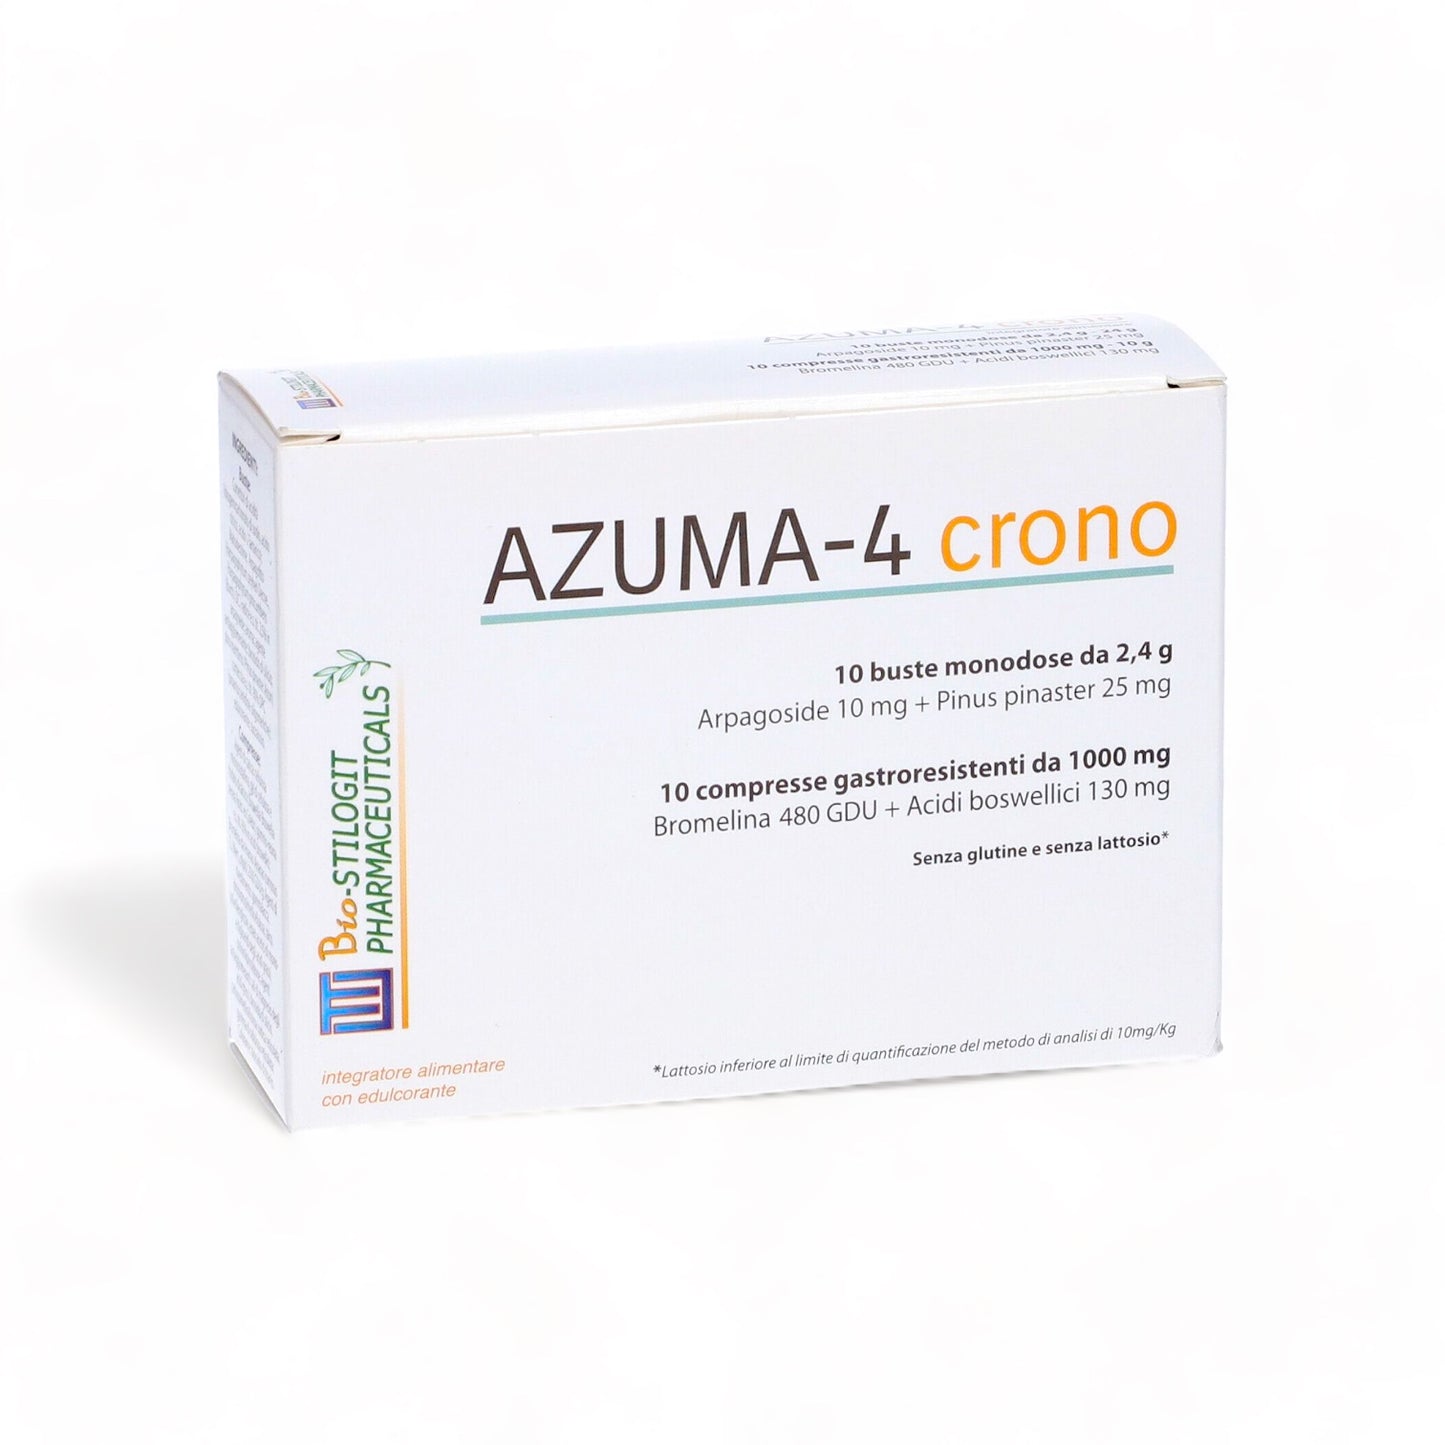 AZUMA-4 crono